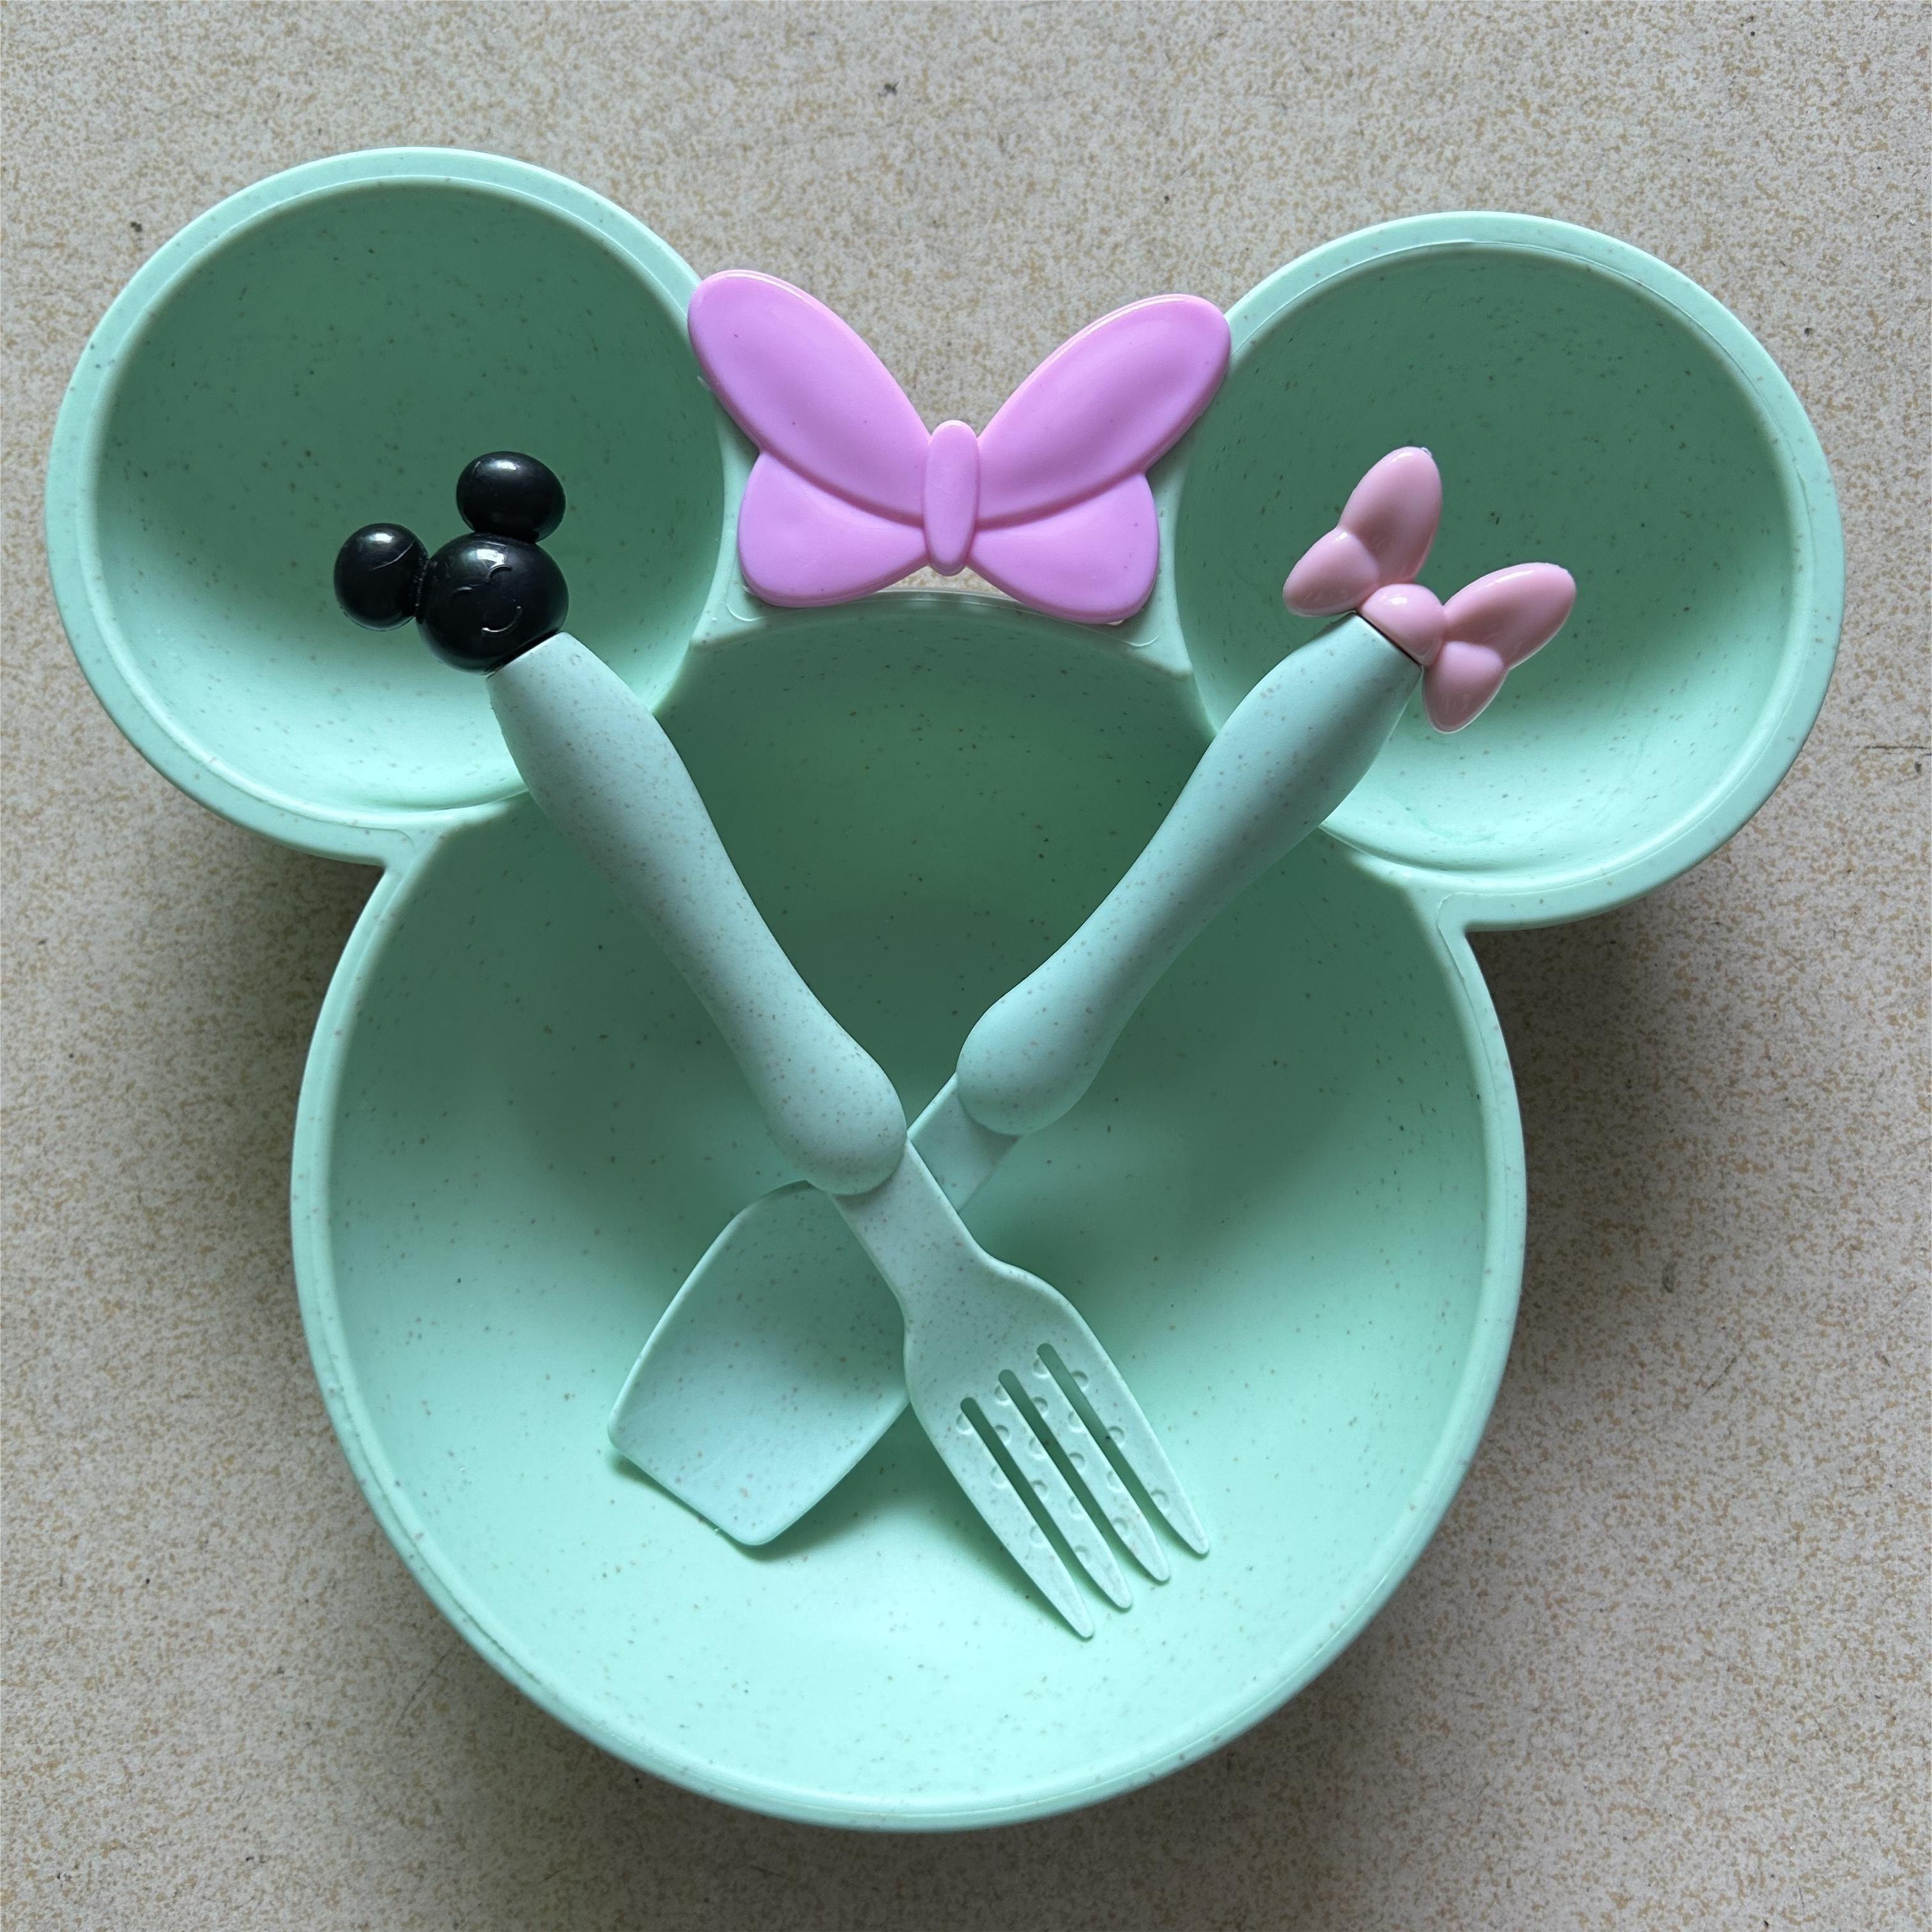 Disney-vajilla de dibujos animados de Mickey y Minnie, cuchara de